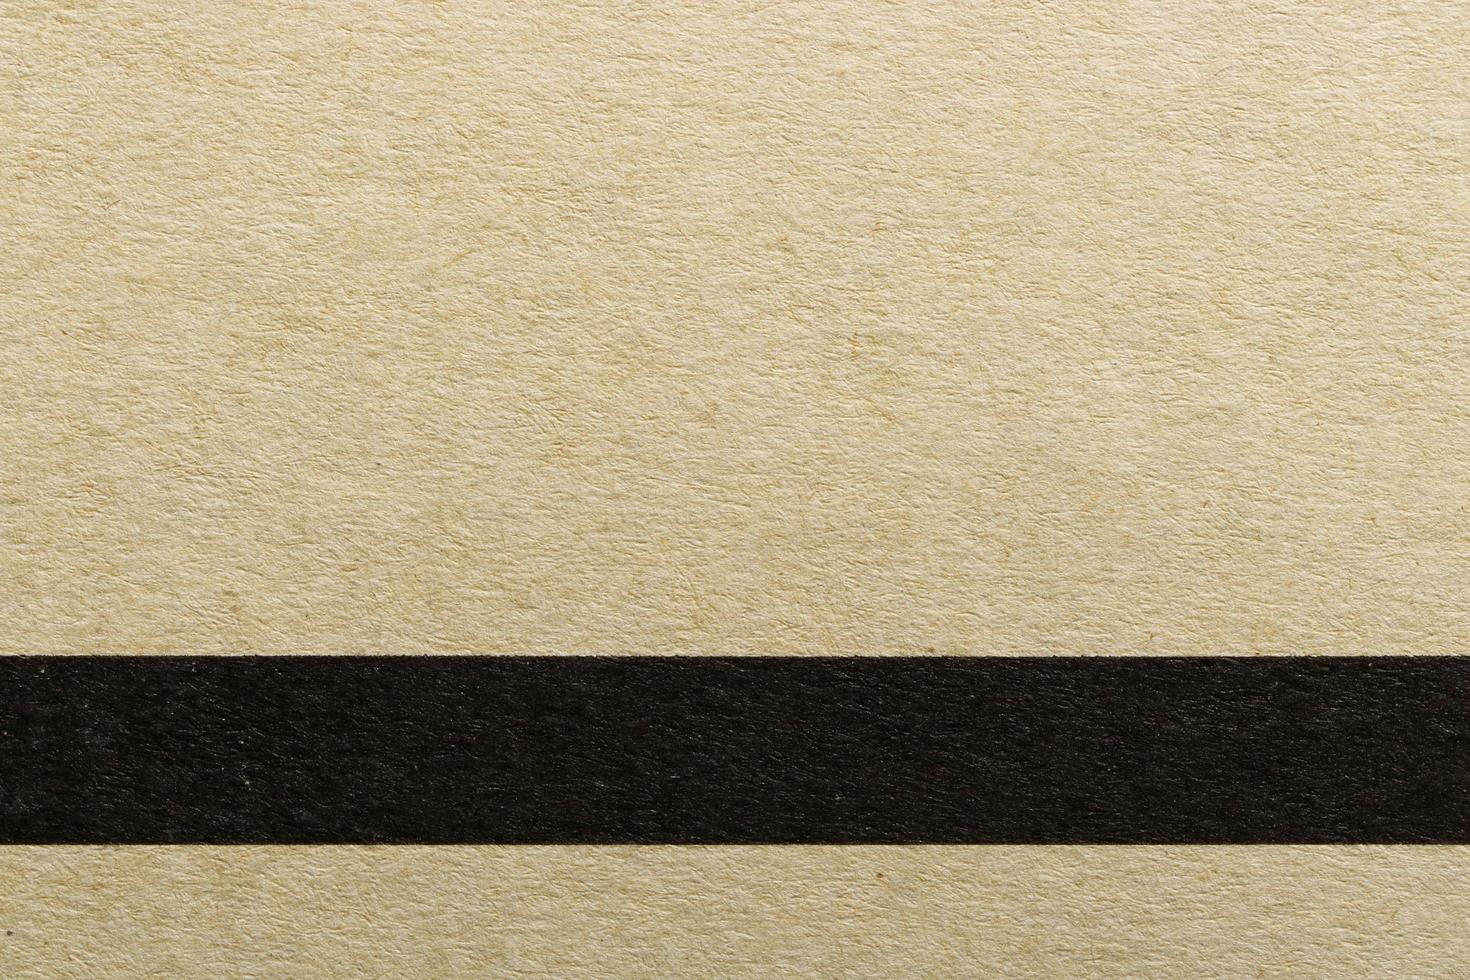 textur av horisontell svart linje på brunt omslagspapper, abstrakt mönsterbakgrund foto